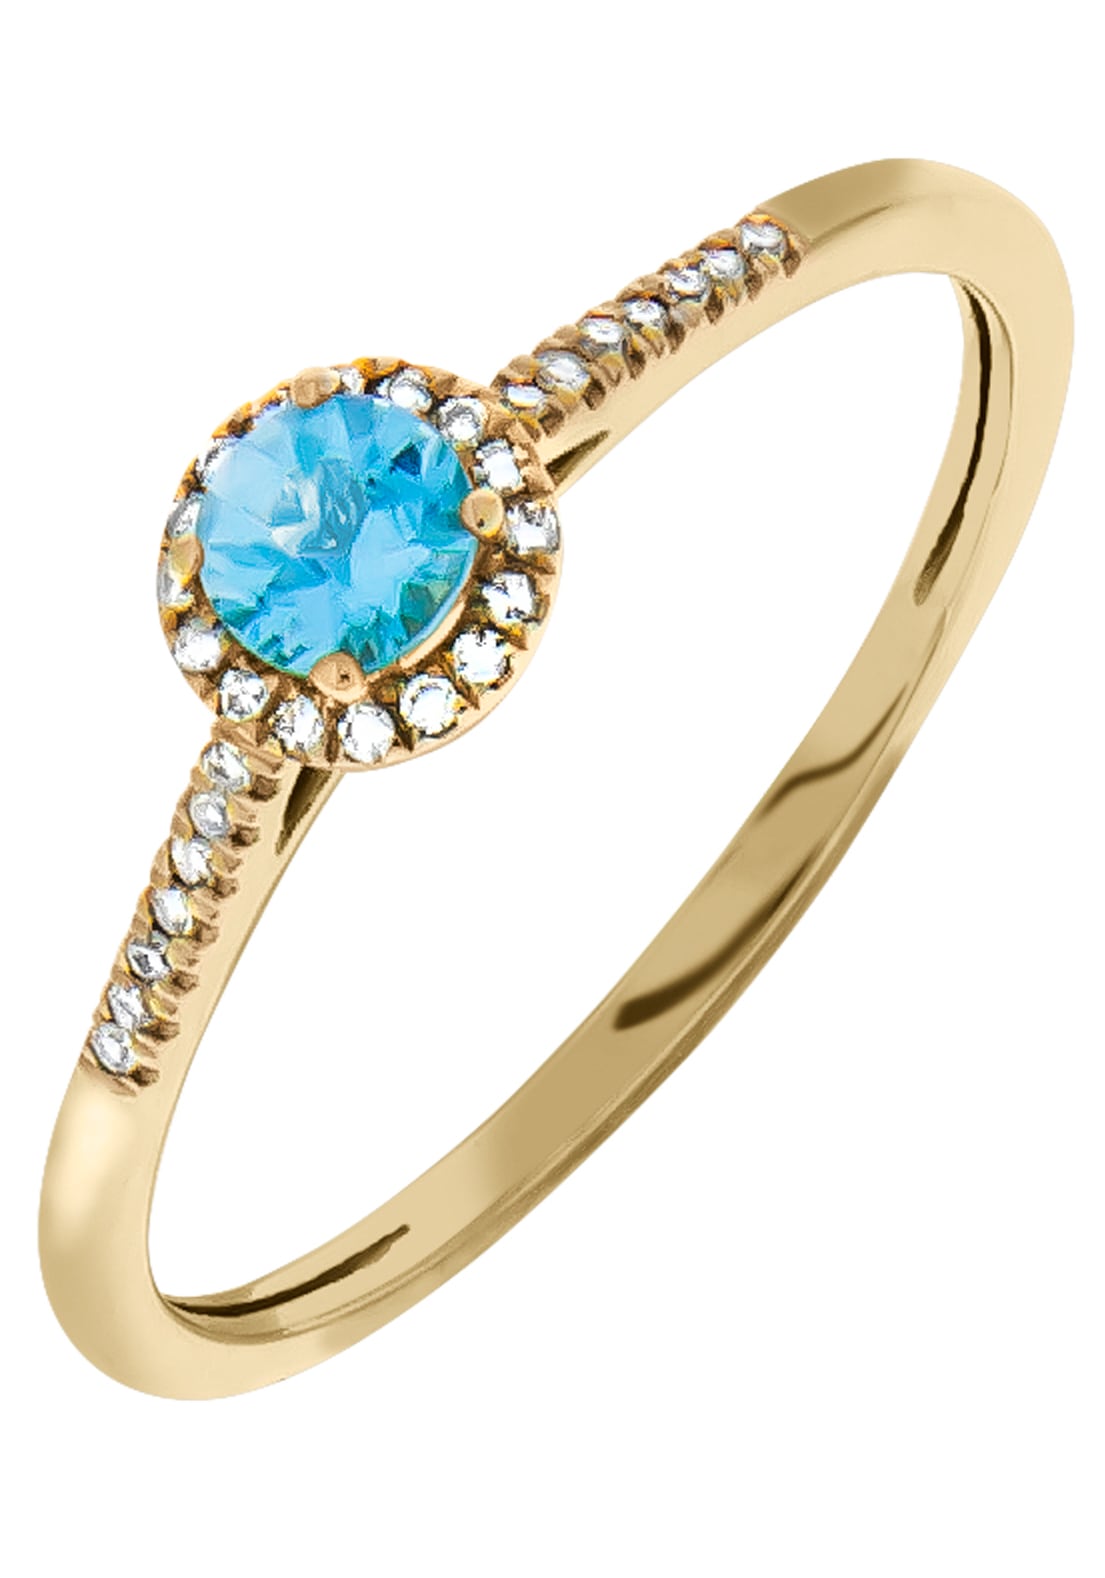 Blautopas Diamantring, Firetti kaufen (behandelt) bequem mit